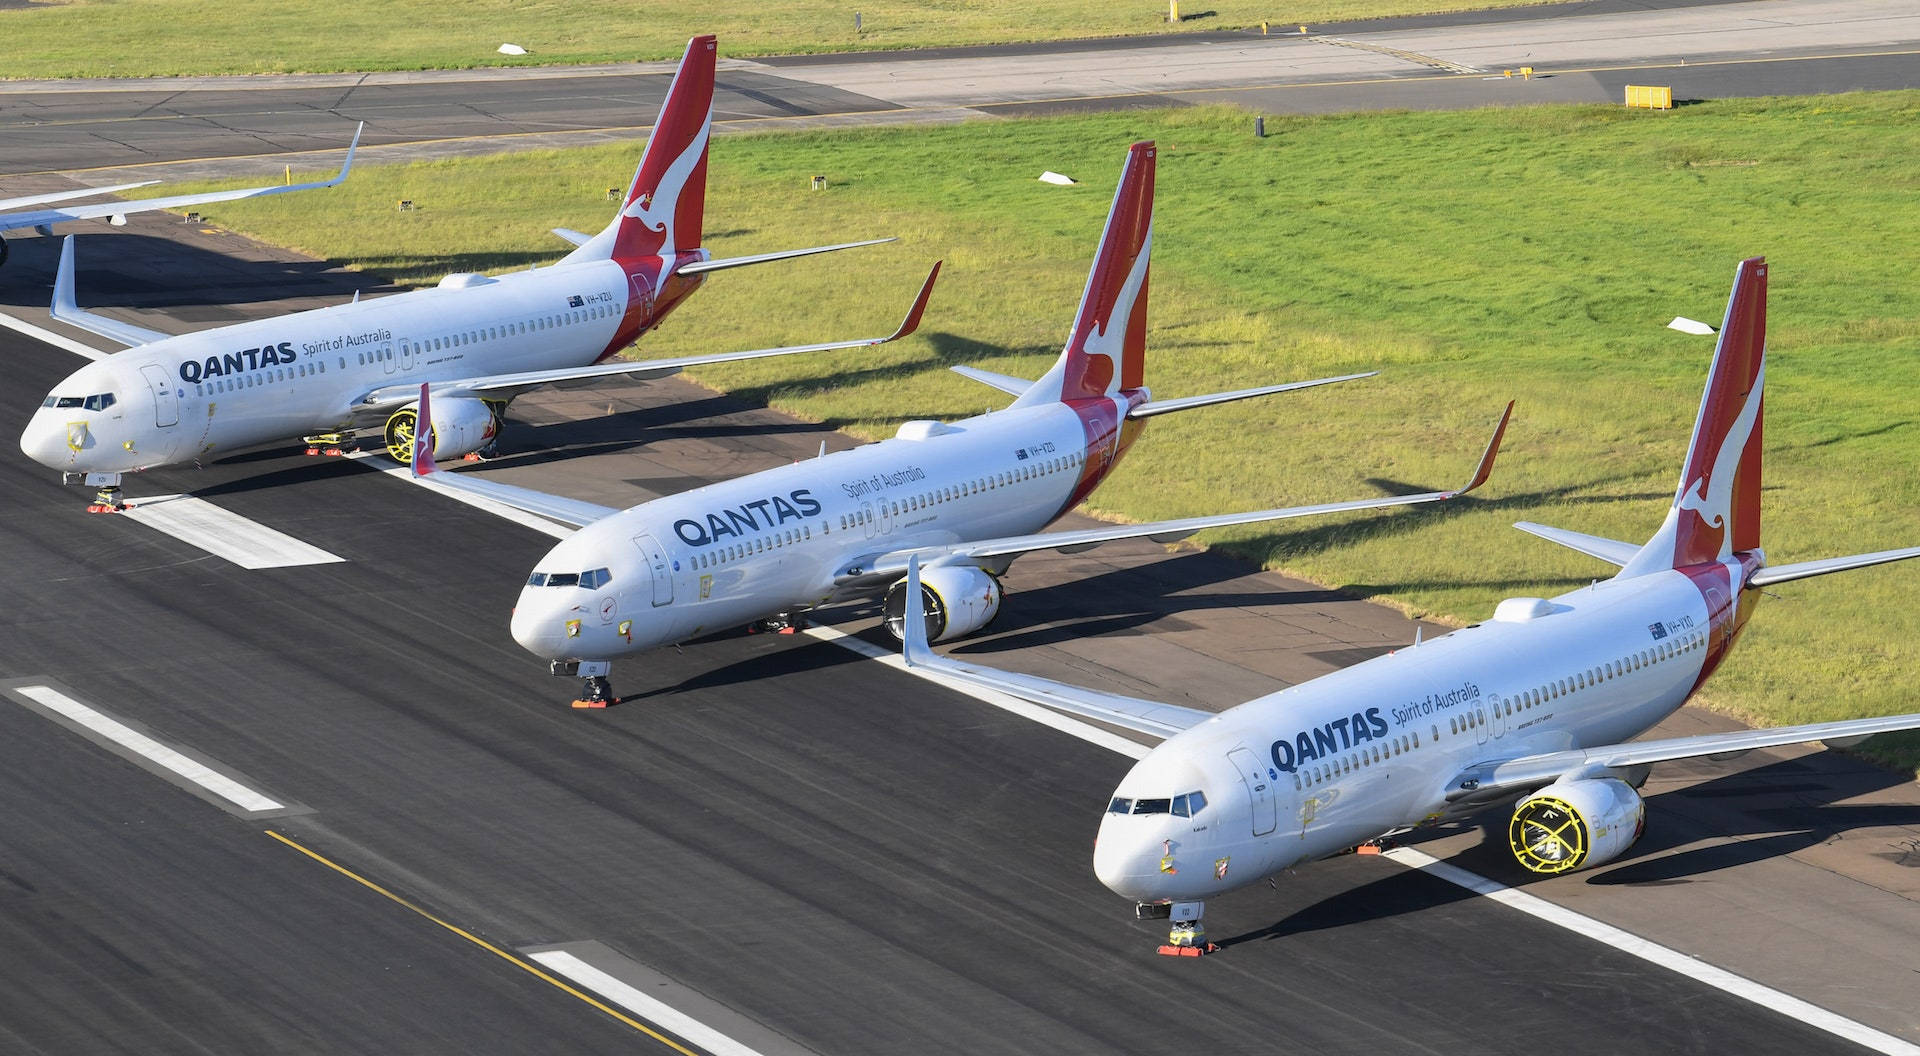 Qantasflygplan På Flygplatsen. Wallpaper